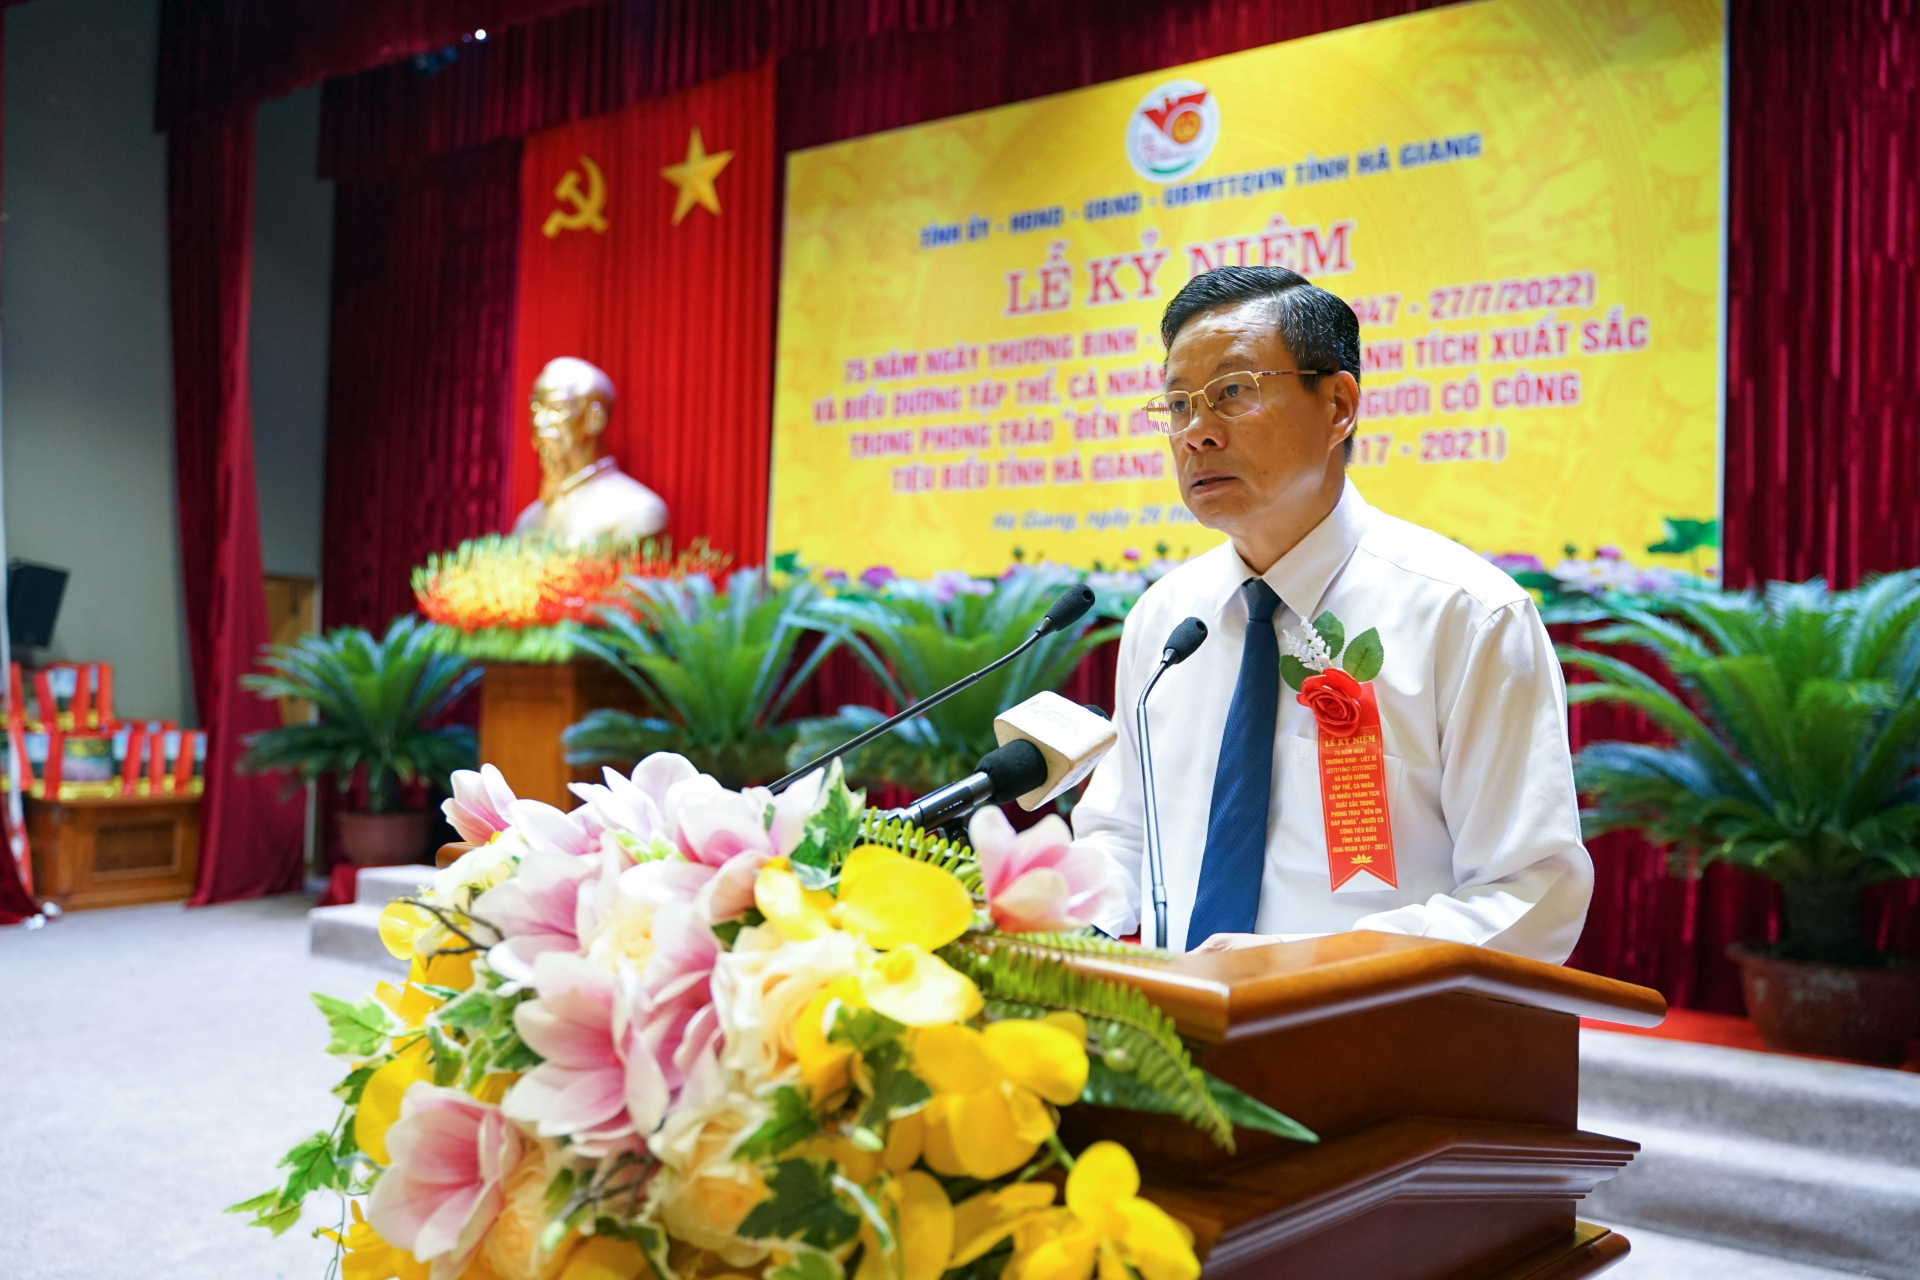 Phó Bí thư Tỉnh ủy, Chủ tịch UBND tỉnh Nguyễn Văn Sơn đọc diễn văn tại Lễ kỷ niệm.
